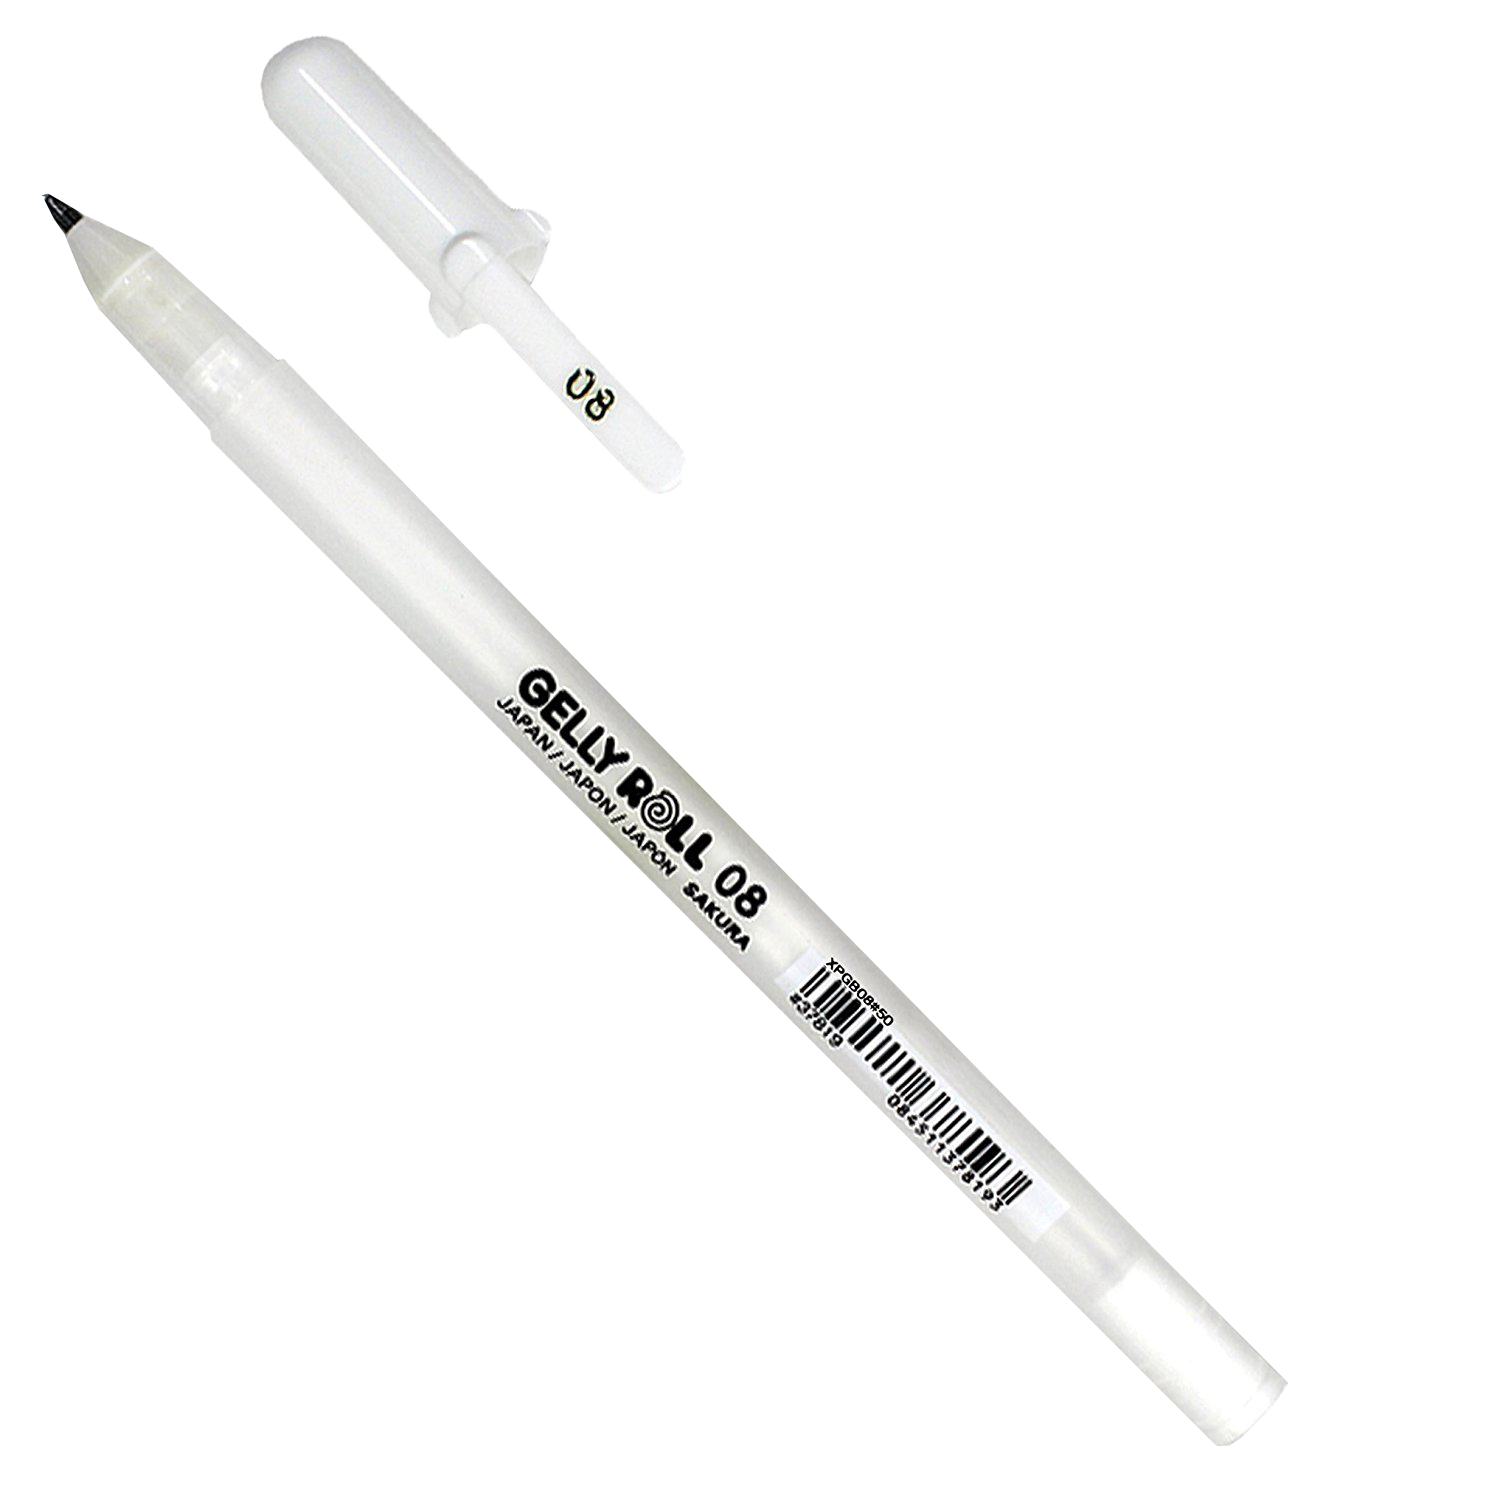 Sakura Gelly Roll Gel Pen White 08 - 0.4 mm